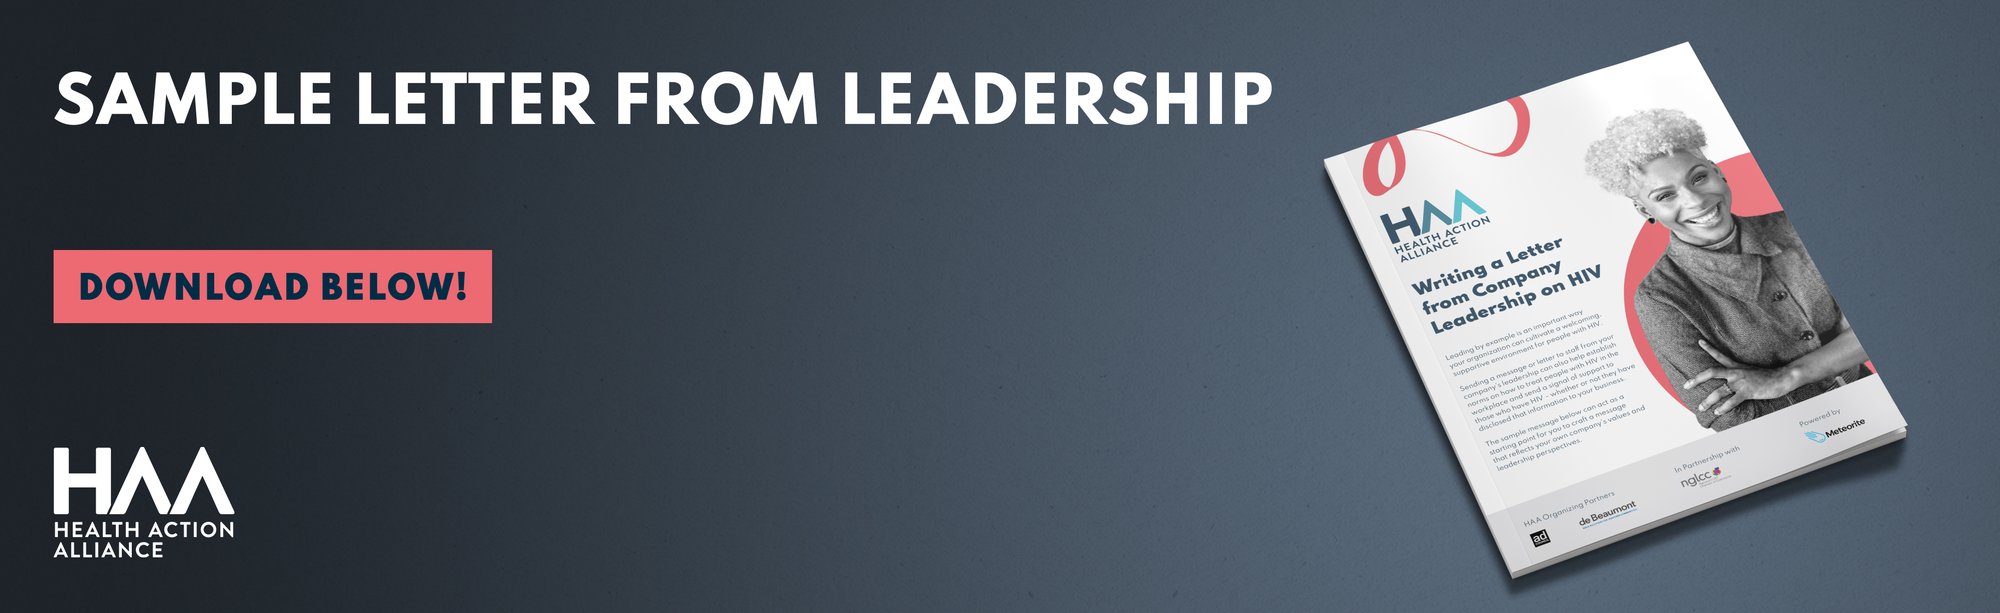 Sample Letter from Leadership Banner